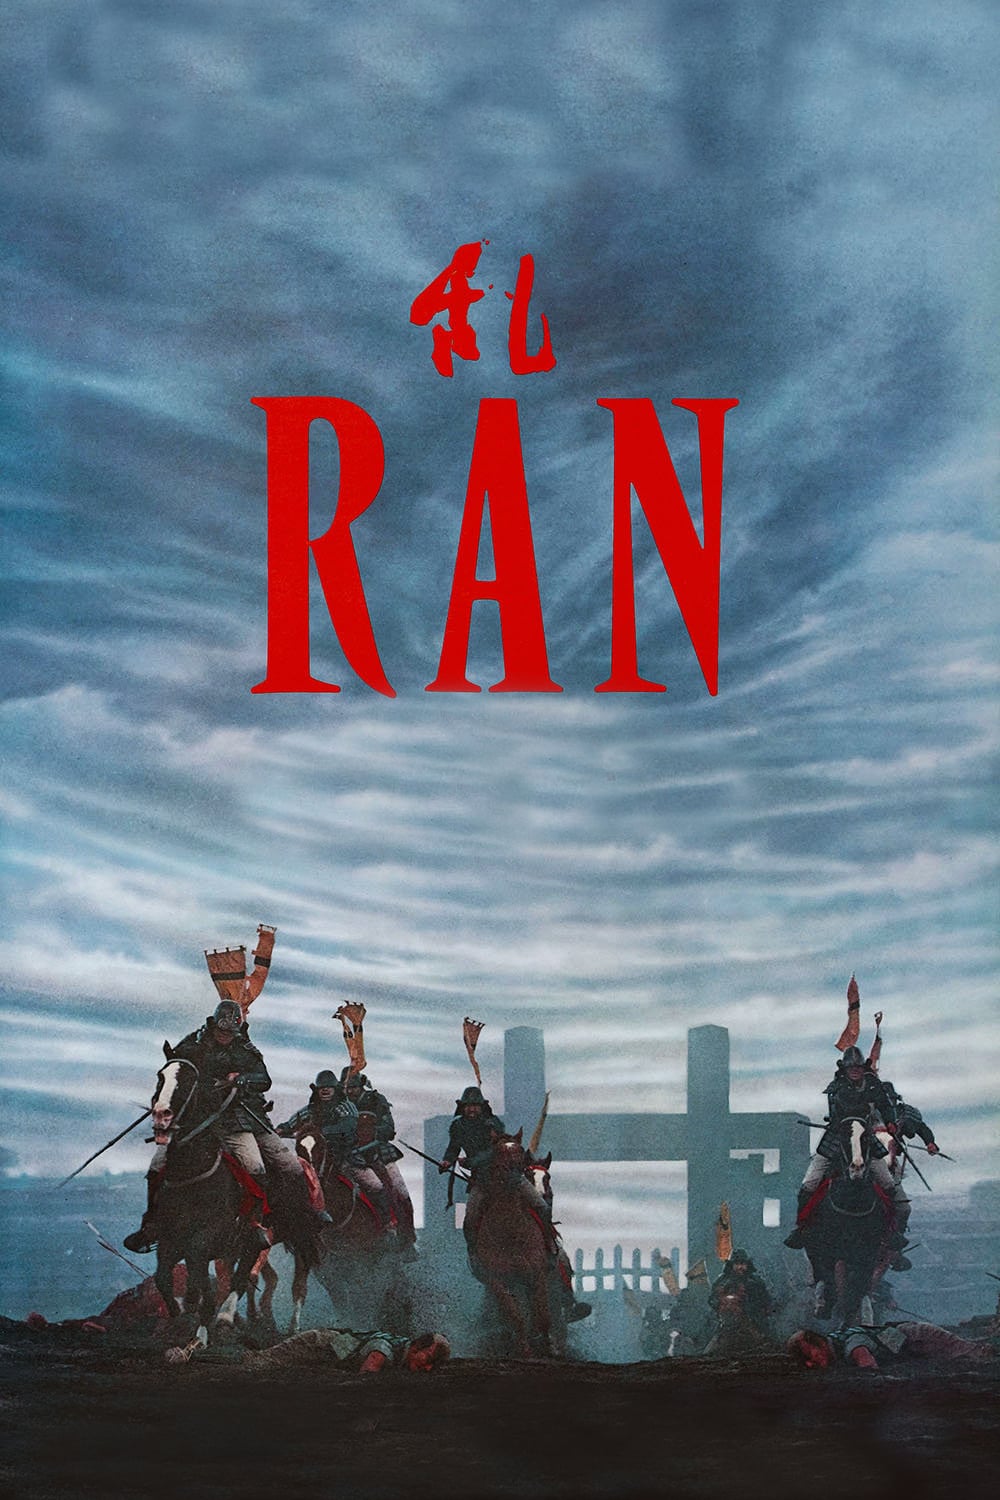 Plakat von "Ran"